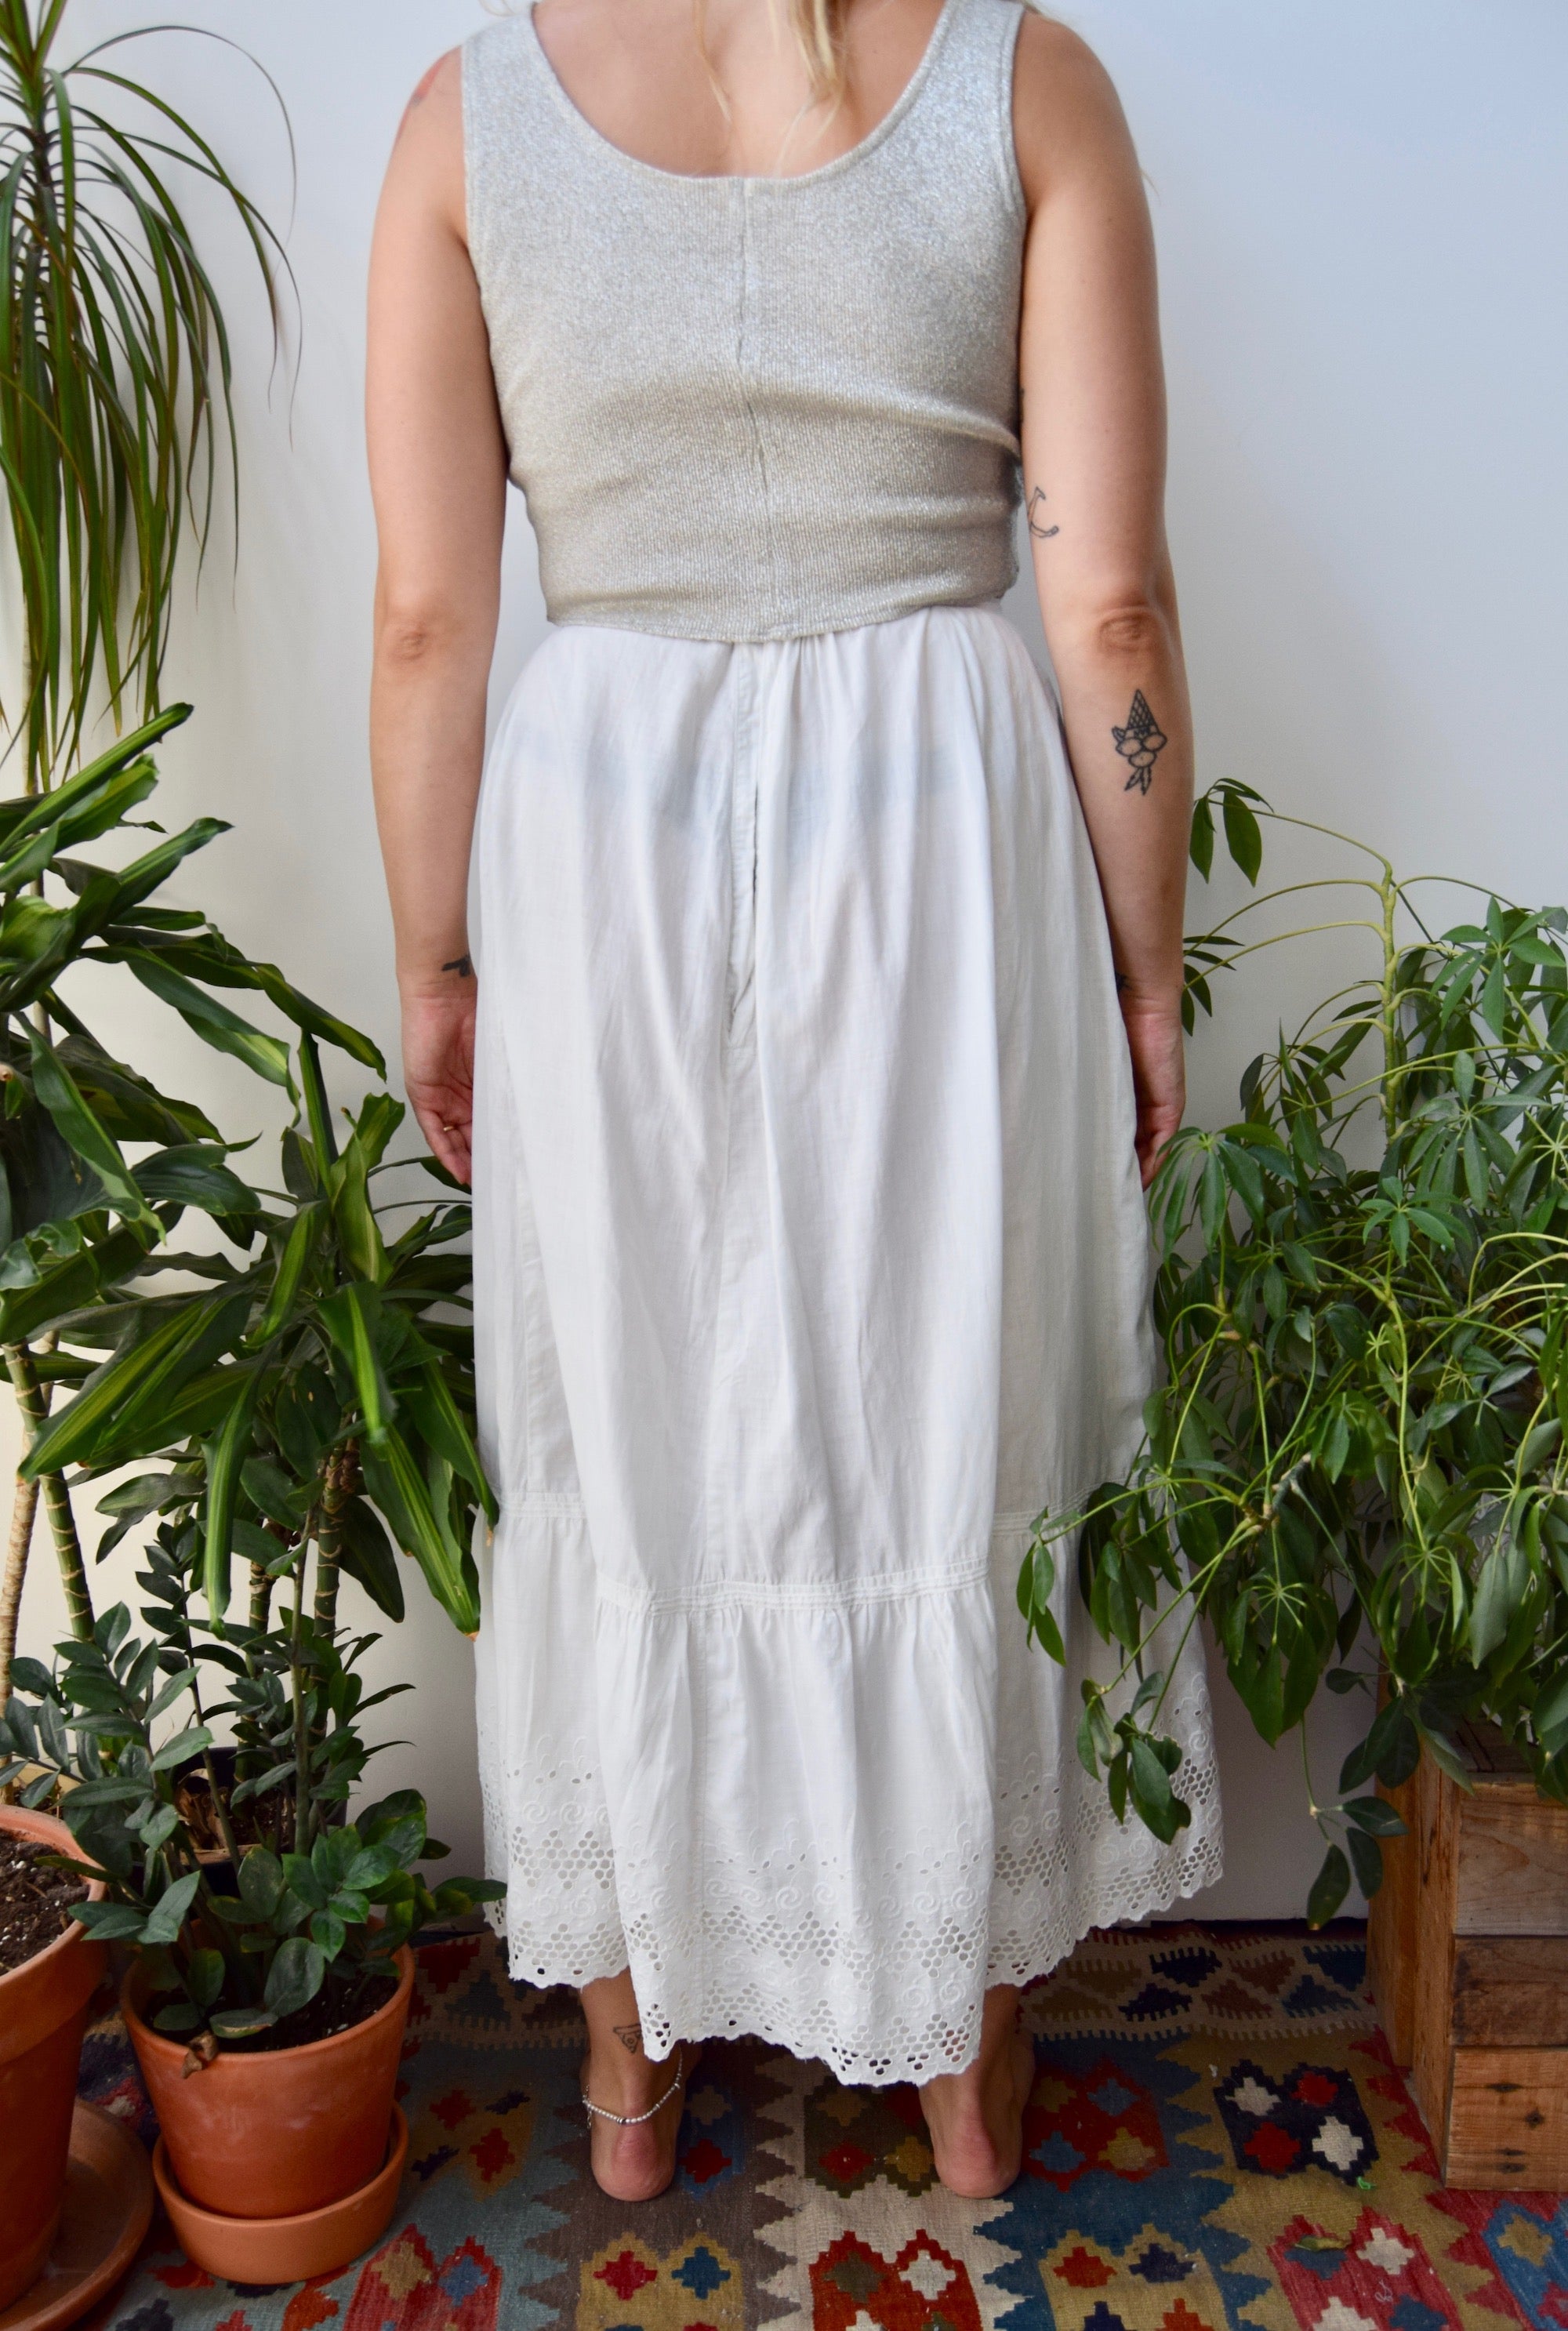 Antique Cotton Petticoat Skirt